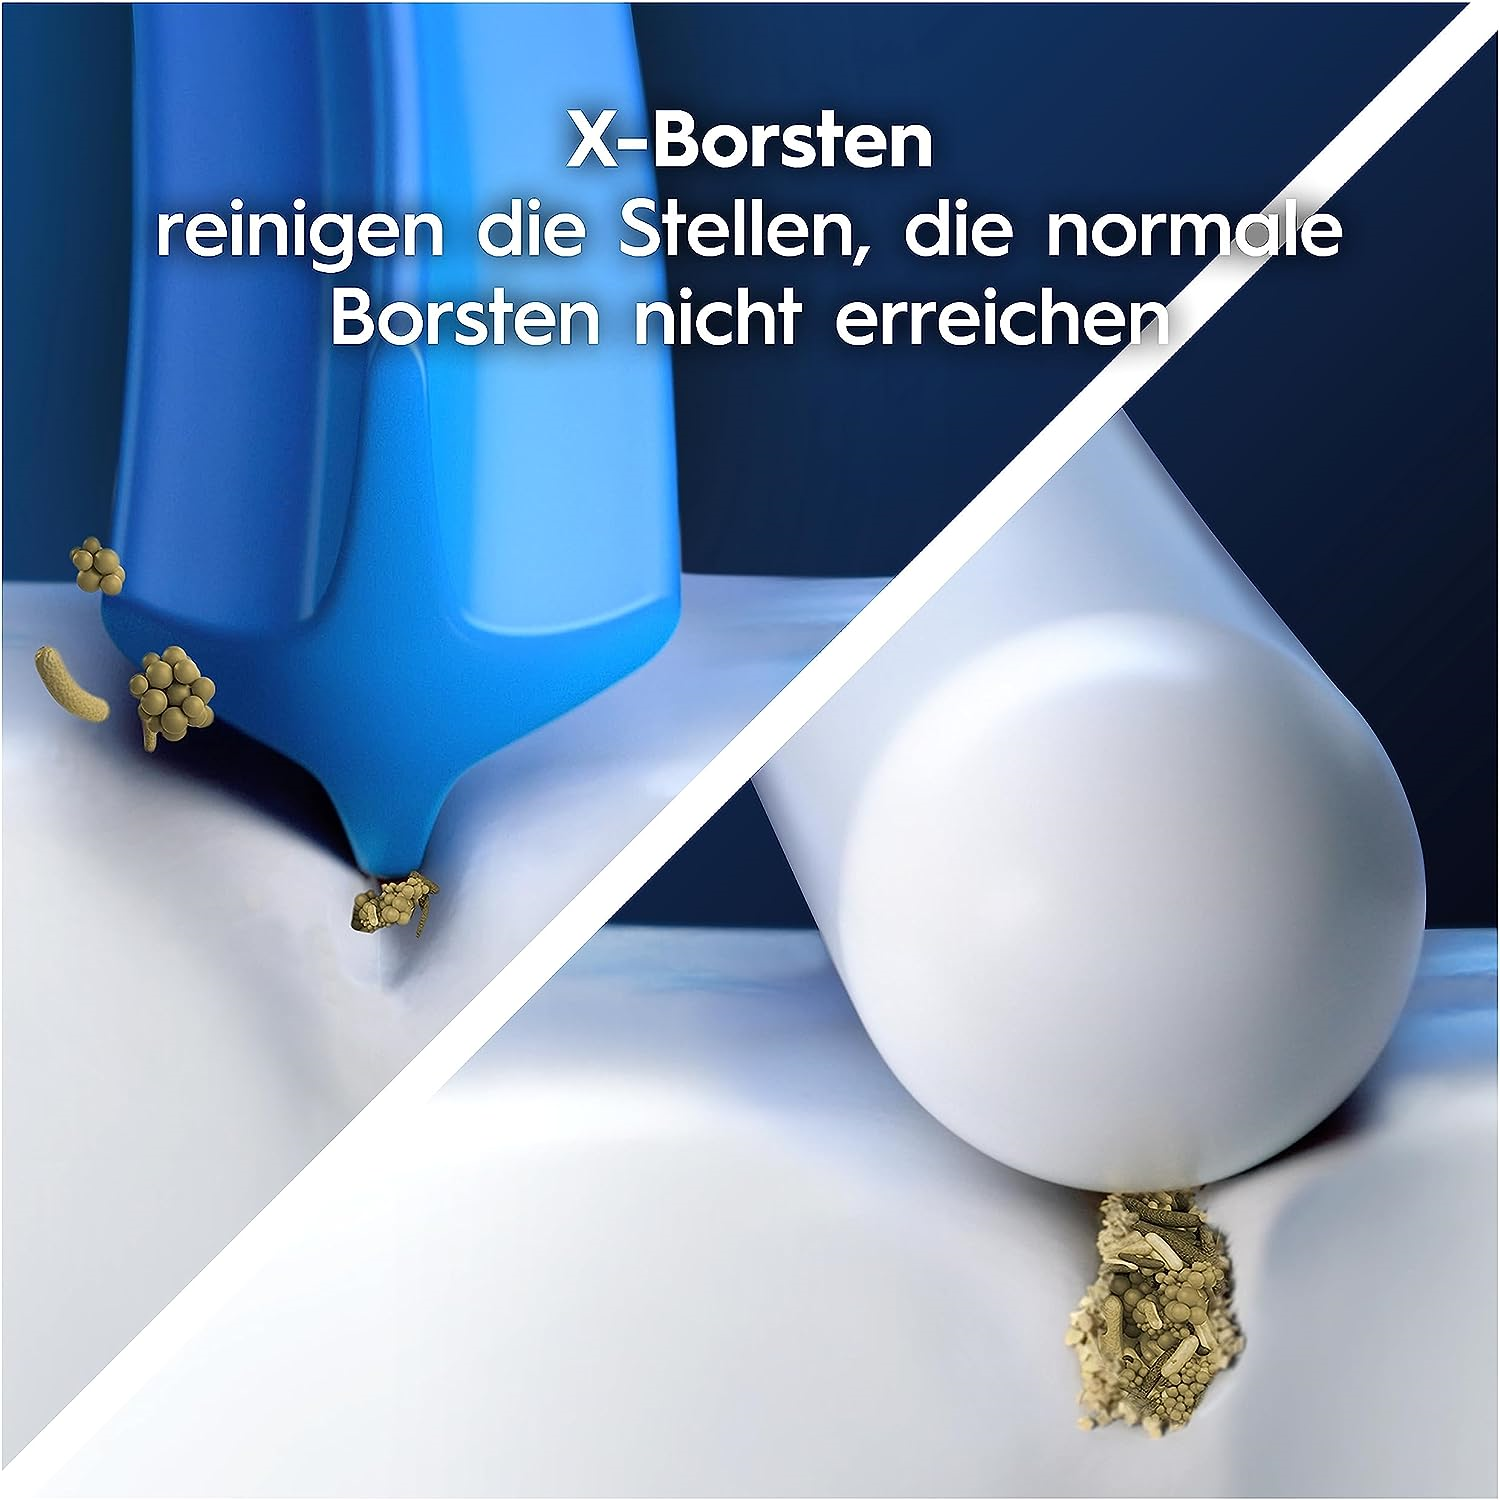 Oral-B Aufsteckbürsten Pro Sensitive Clean 10er 